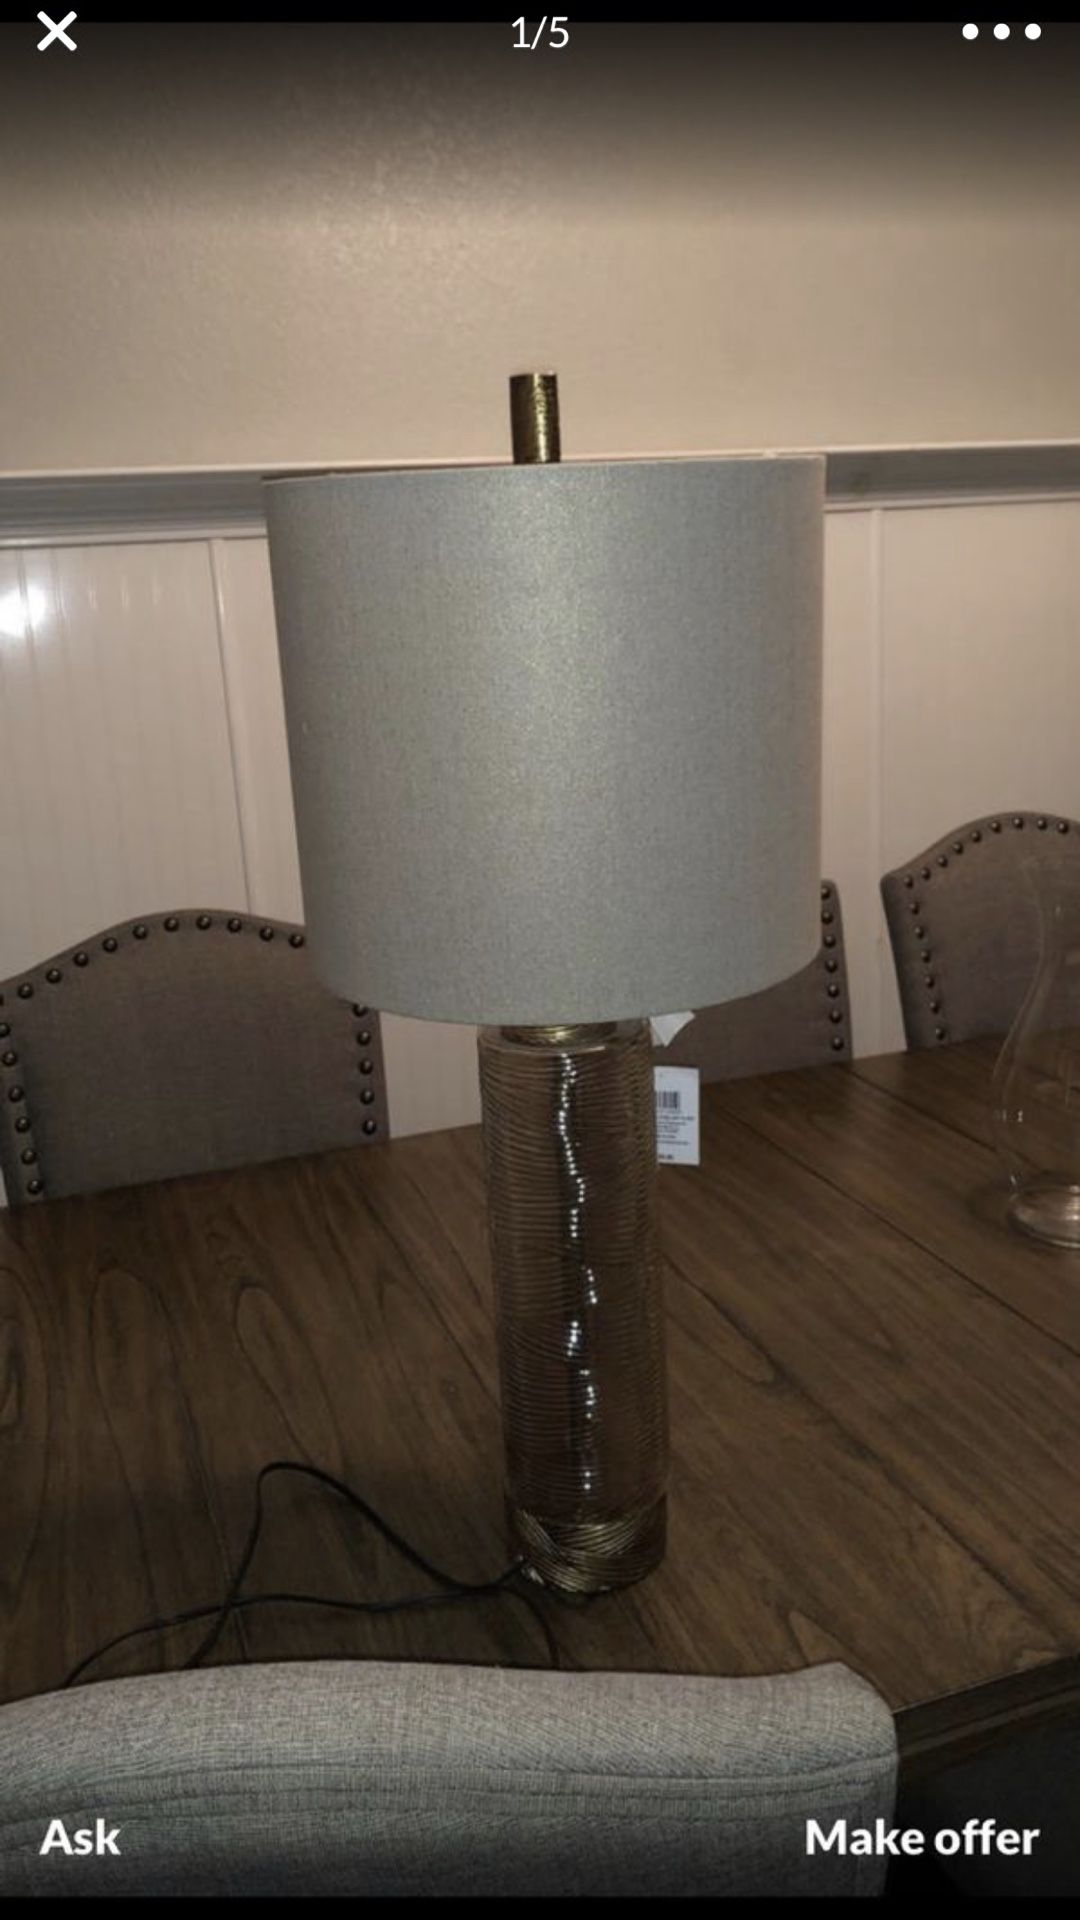 Brand new lamp